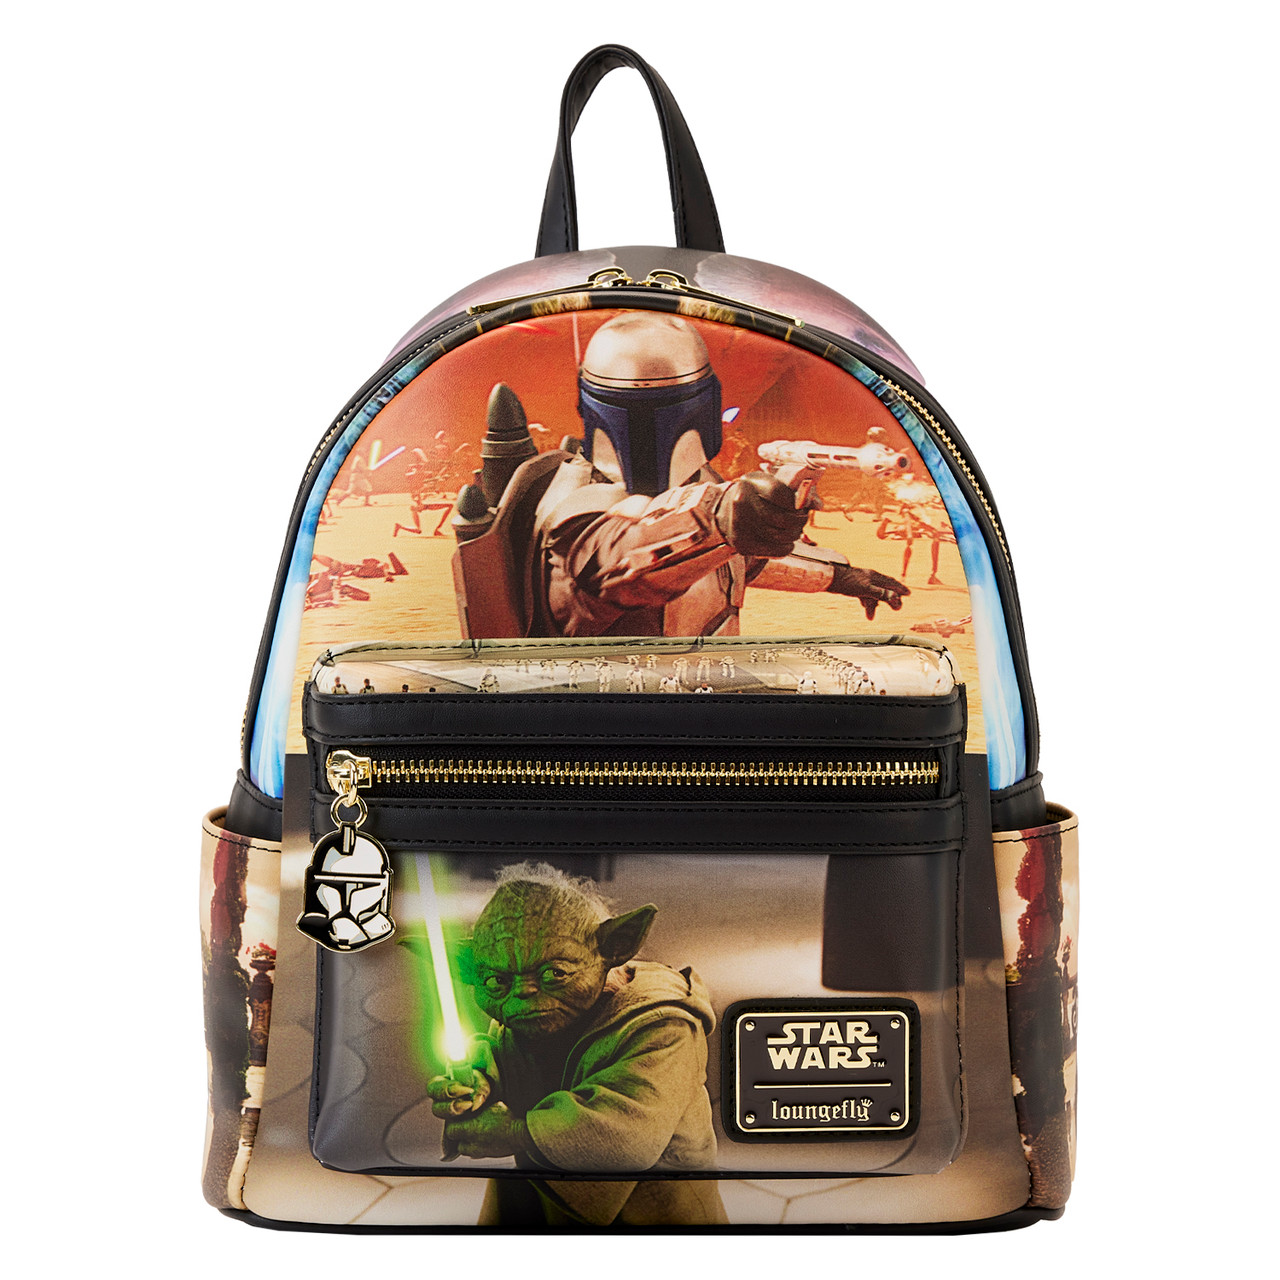 Star Wars: Lands Jakku Loungefly Mini Backpack